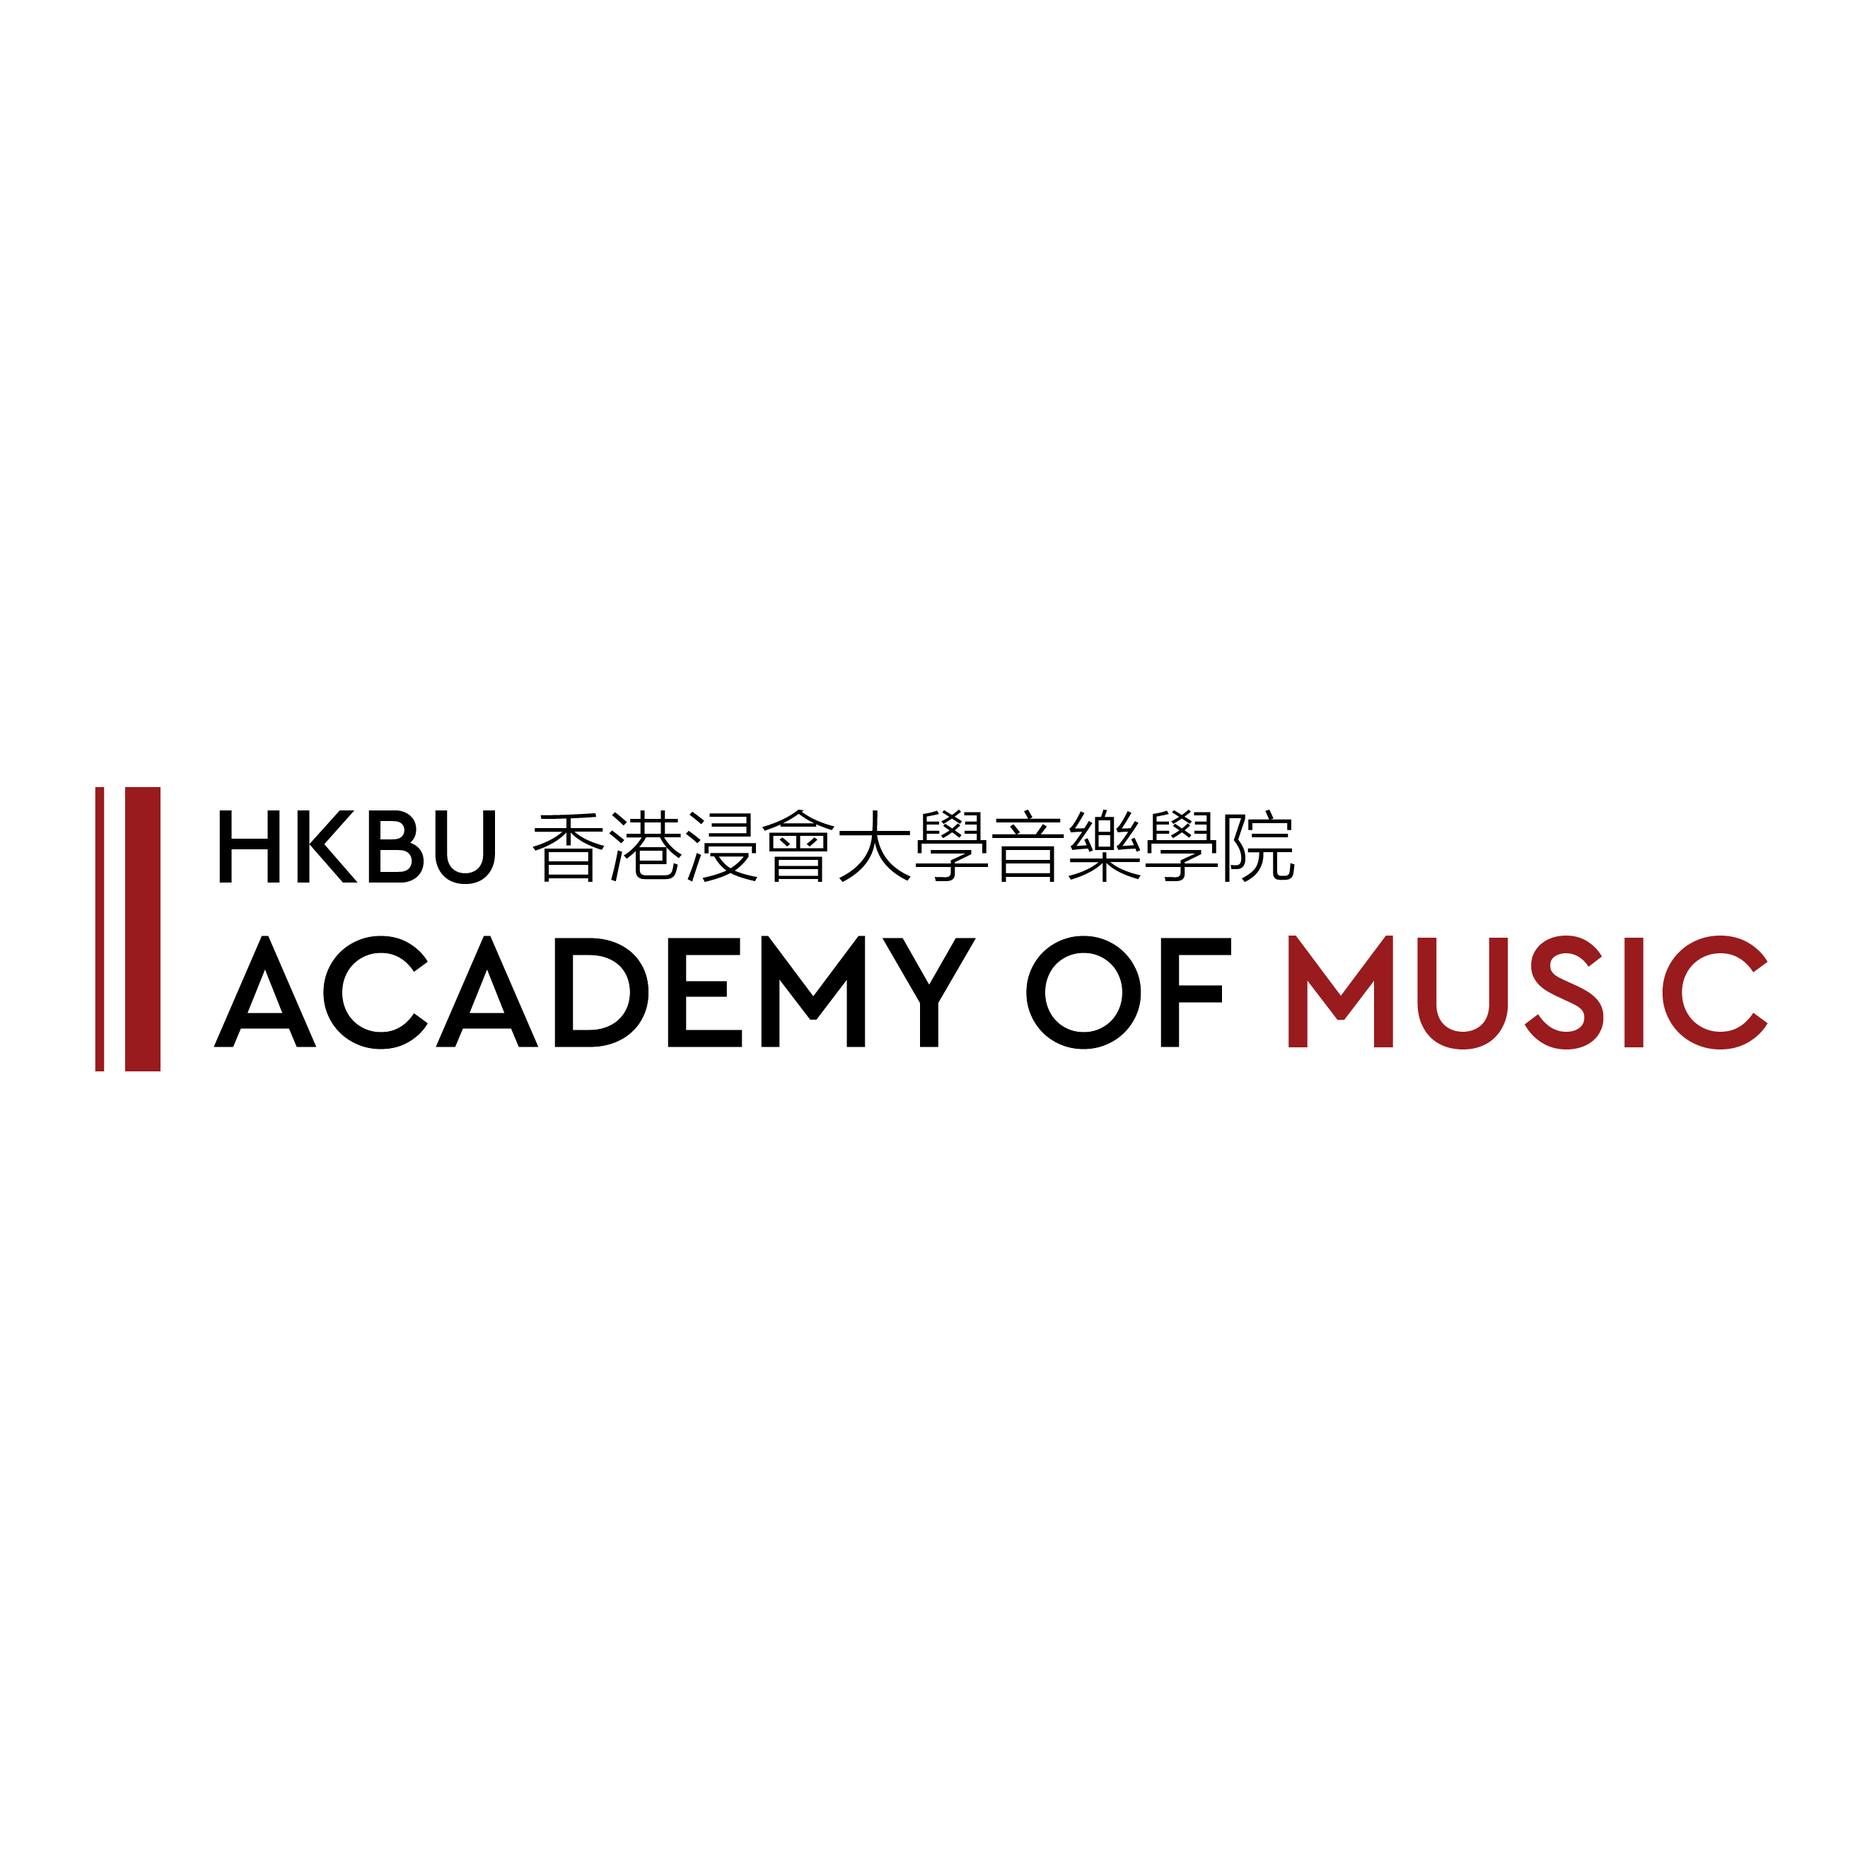 HKBU Academy of Music